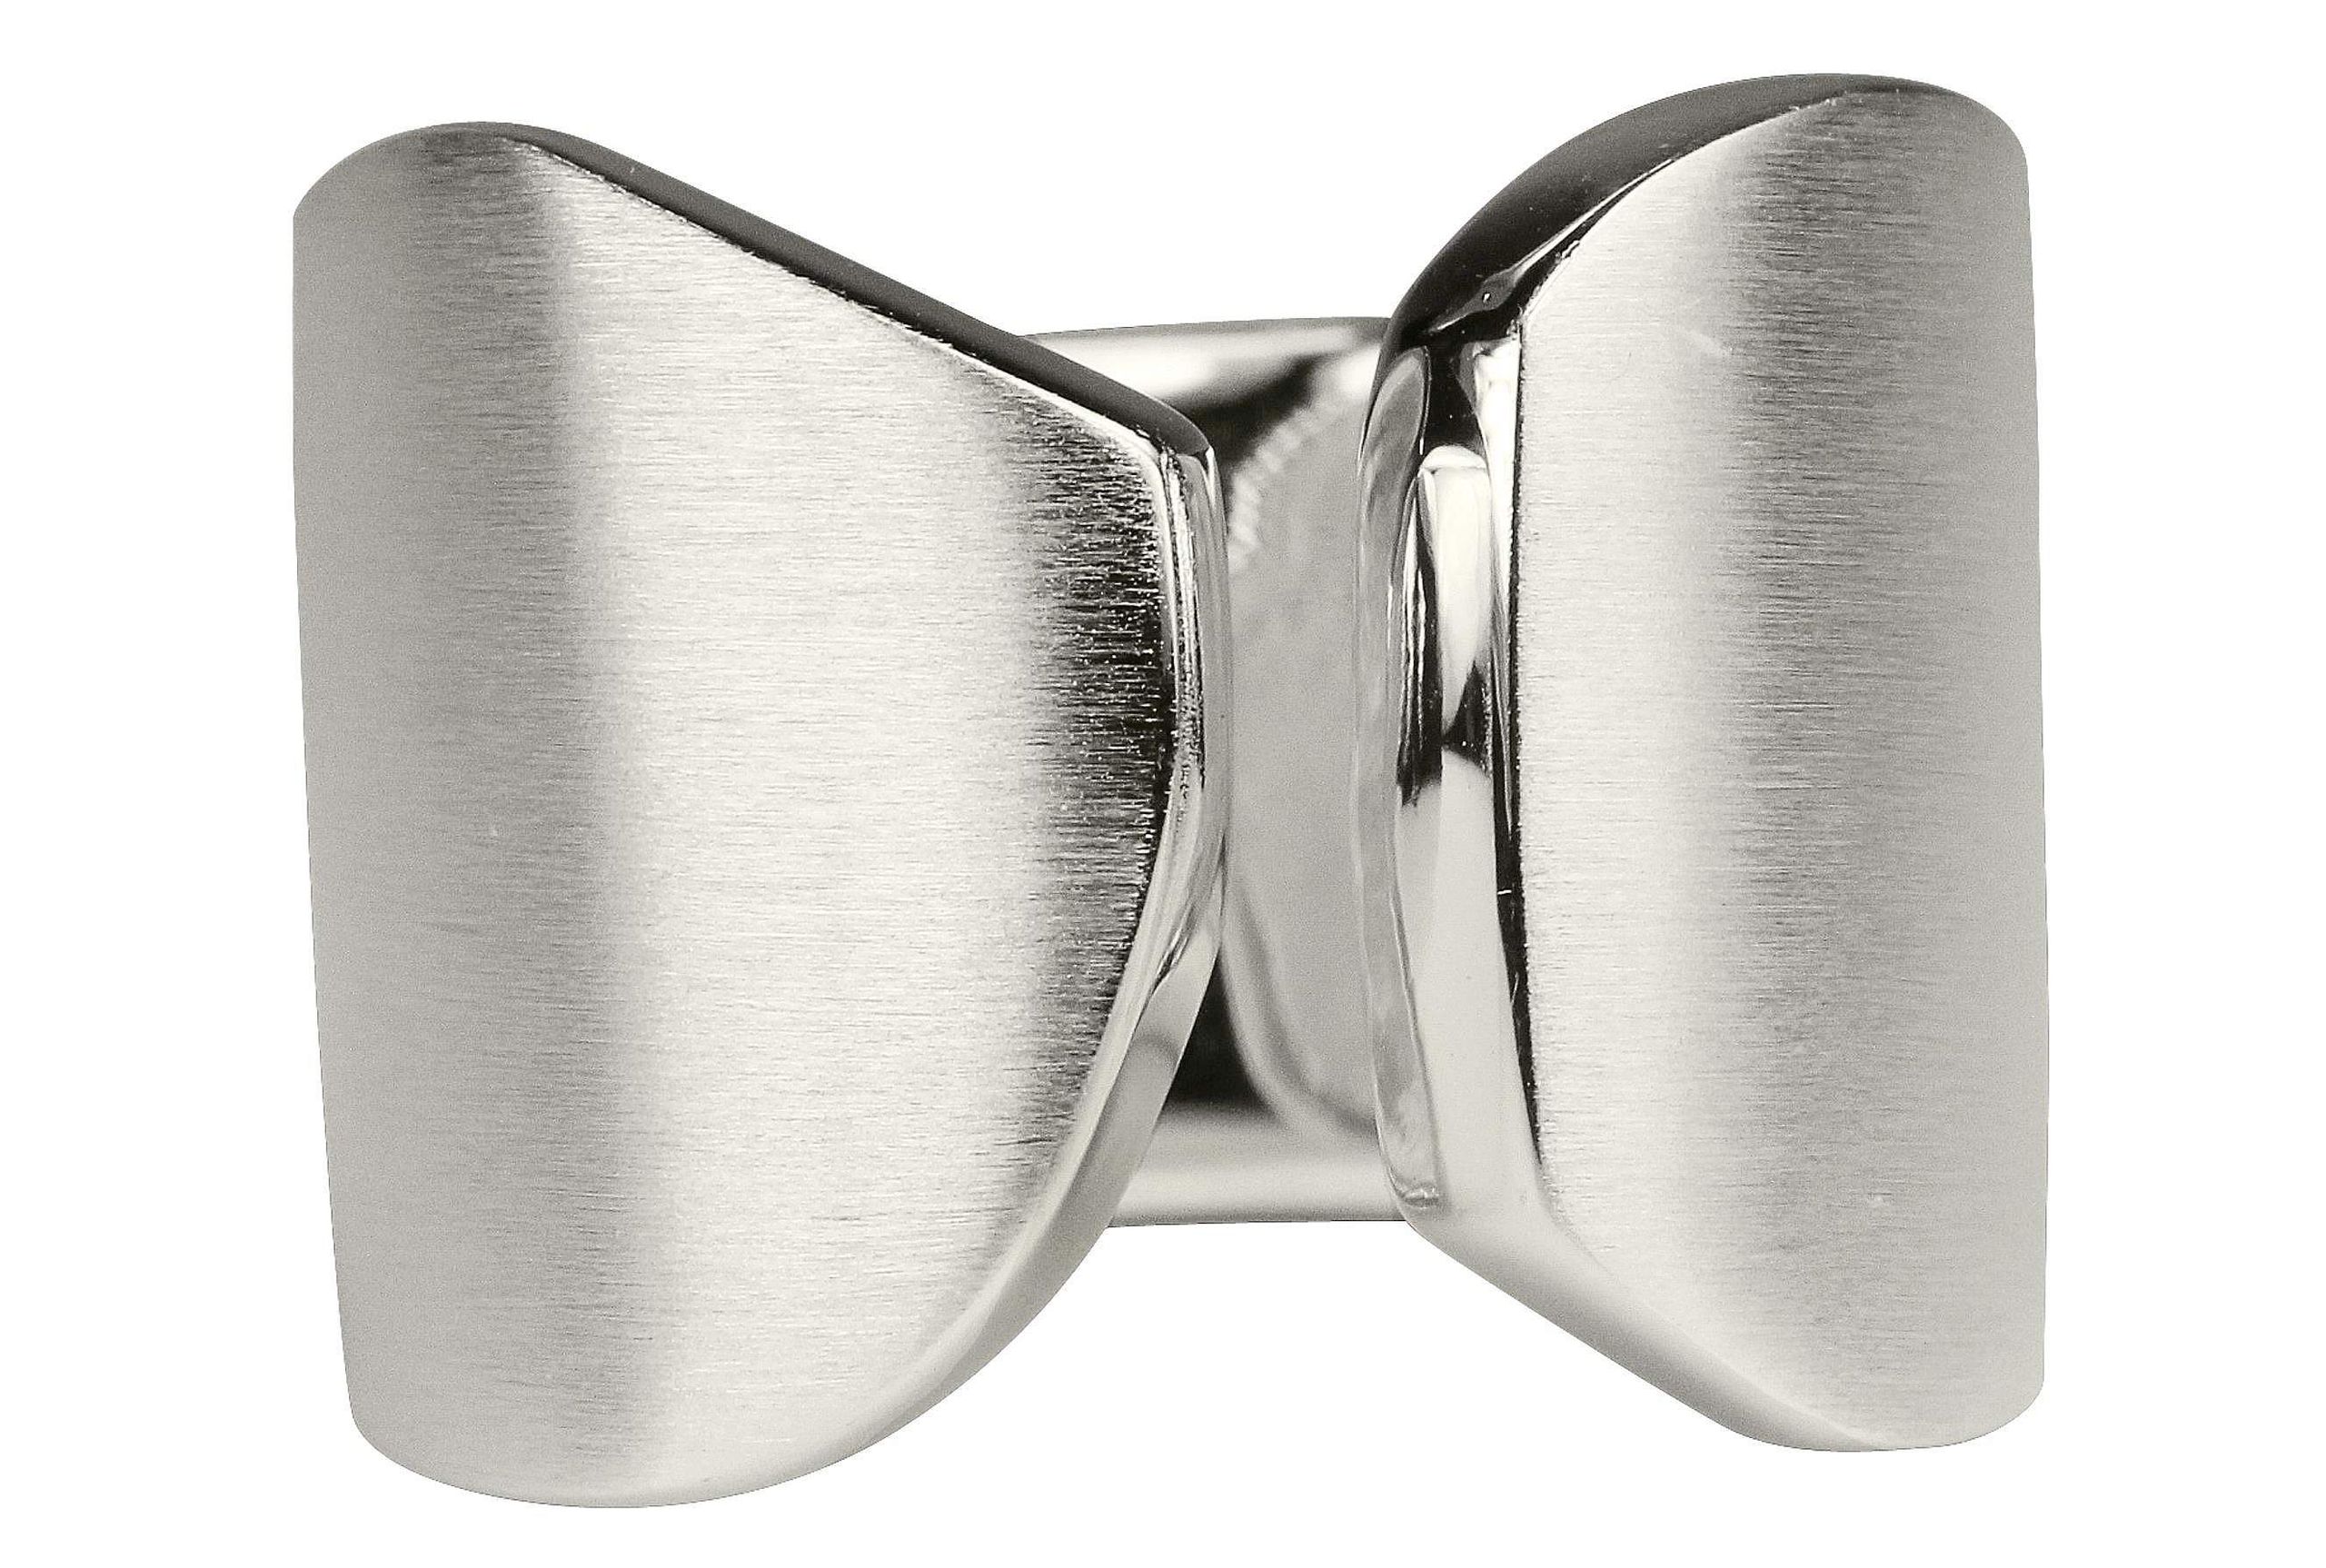 Ein offen gearbeiteter Bandring aus Silber für Damen in den Größen 64 bis 70 mit einer mattierten Oberfläche.